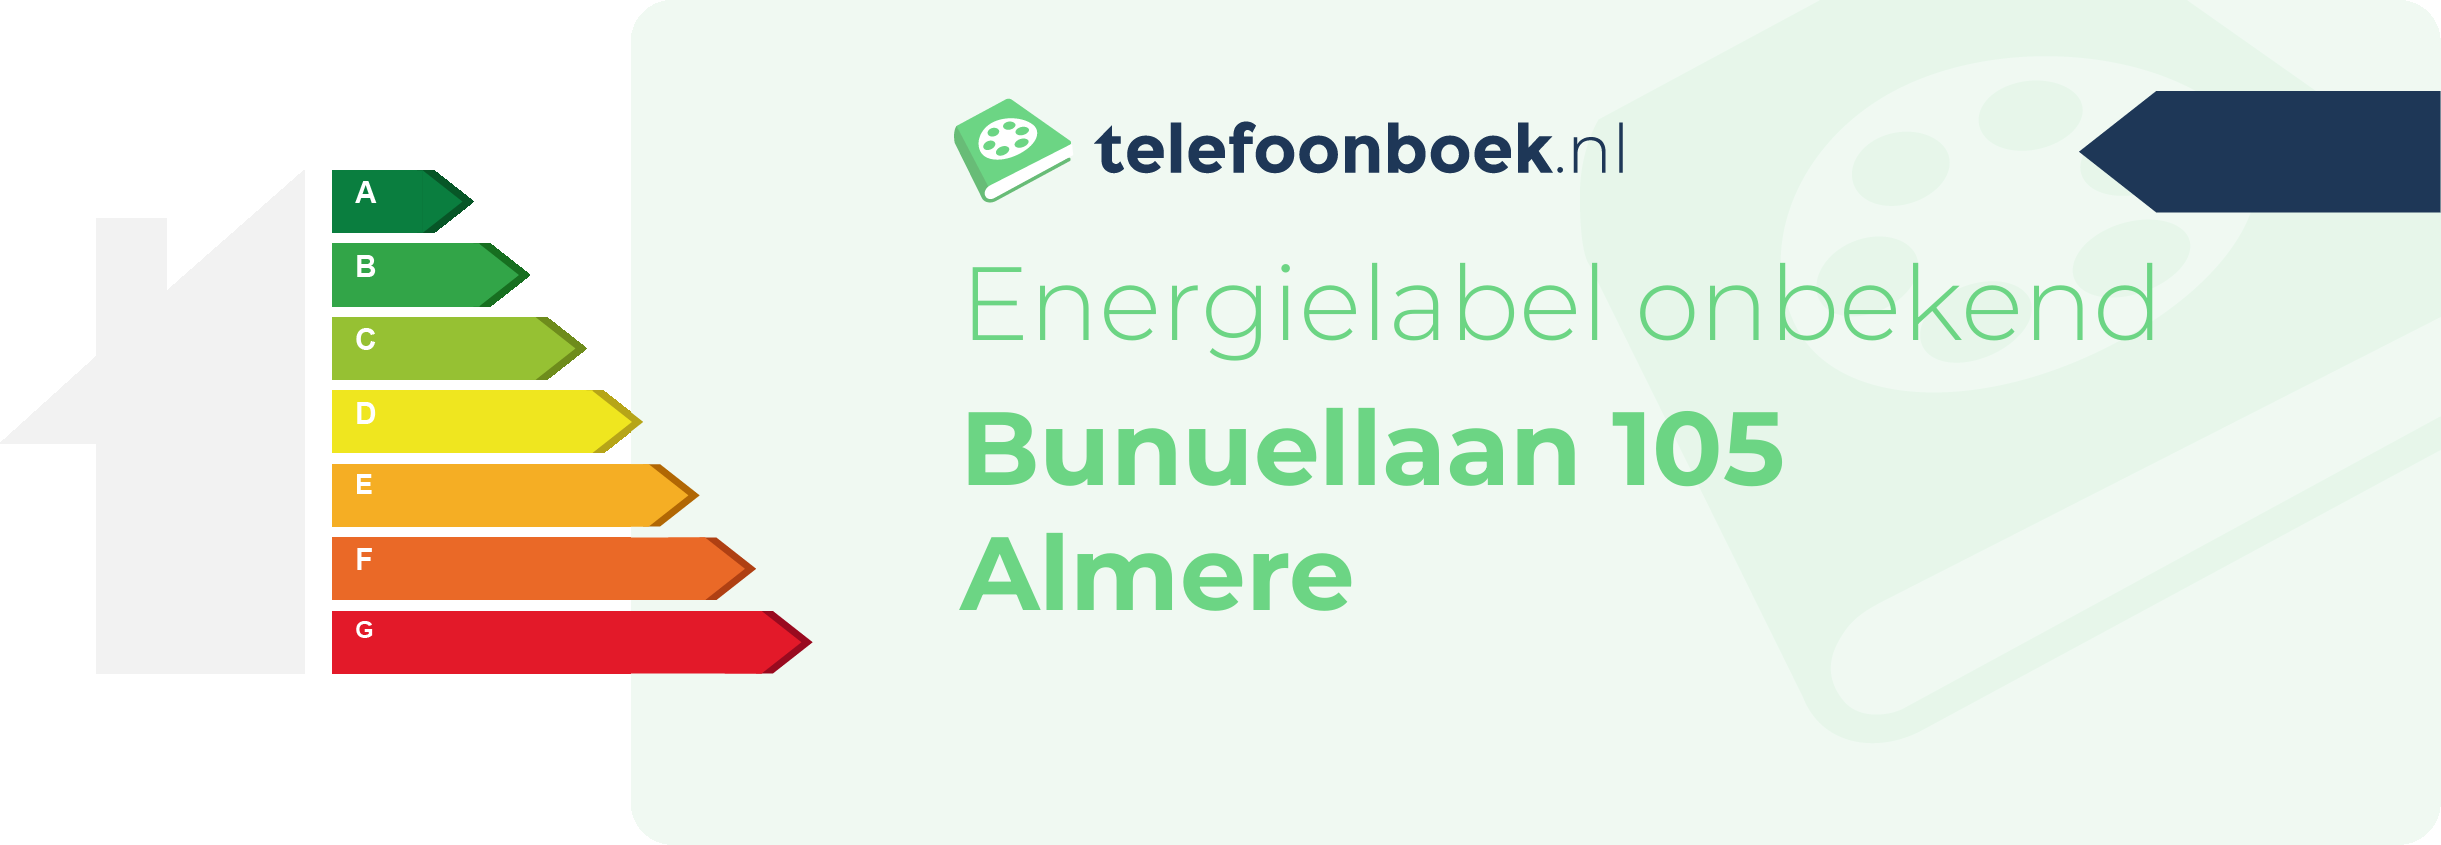 Energielabel Bunuellaan 105 Almere